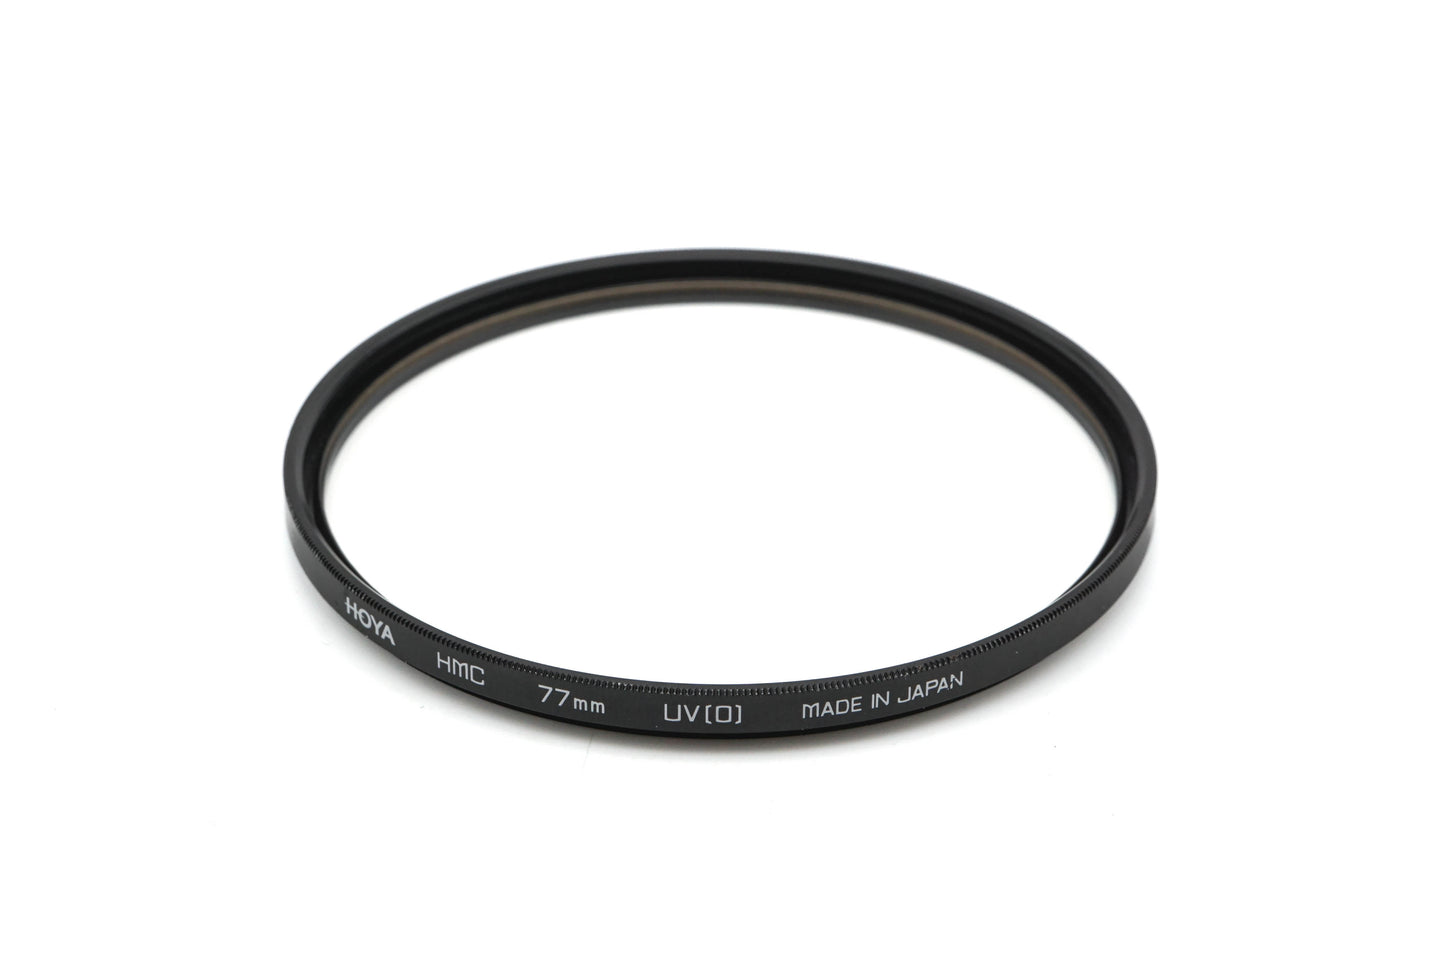 Hoya 77mm UV(O) Filter HMC - Accessory